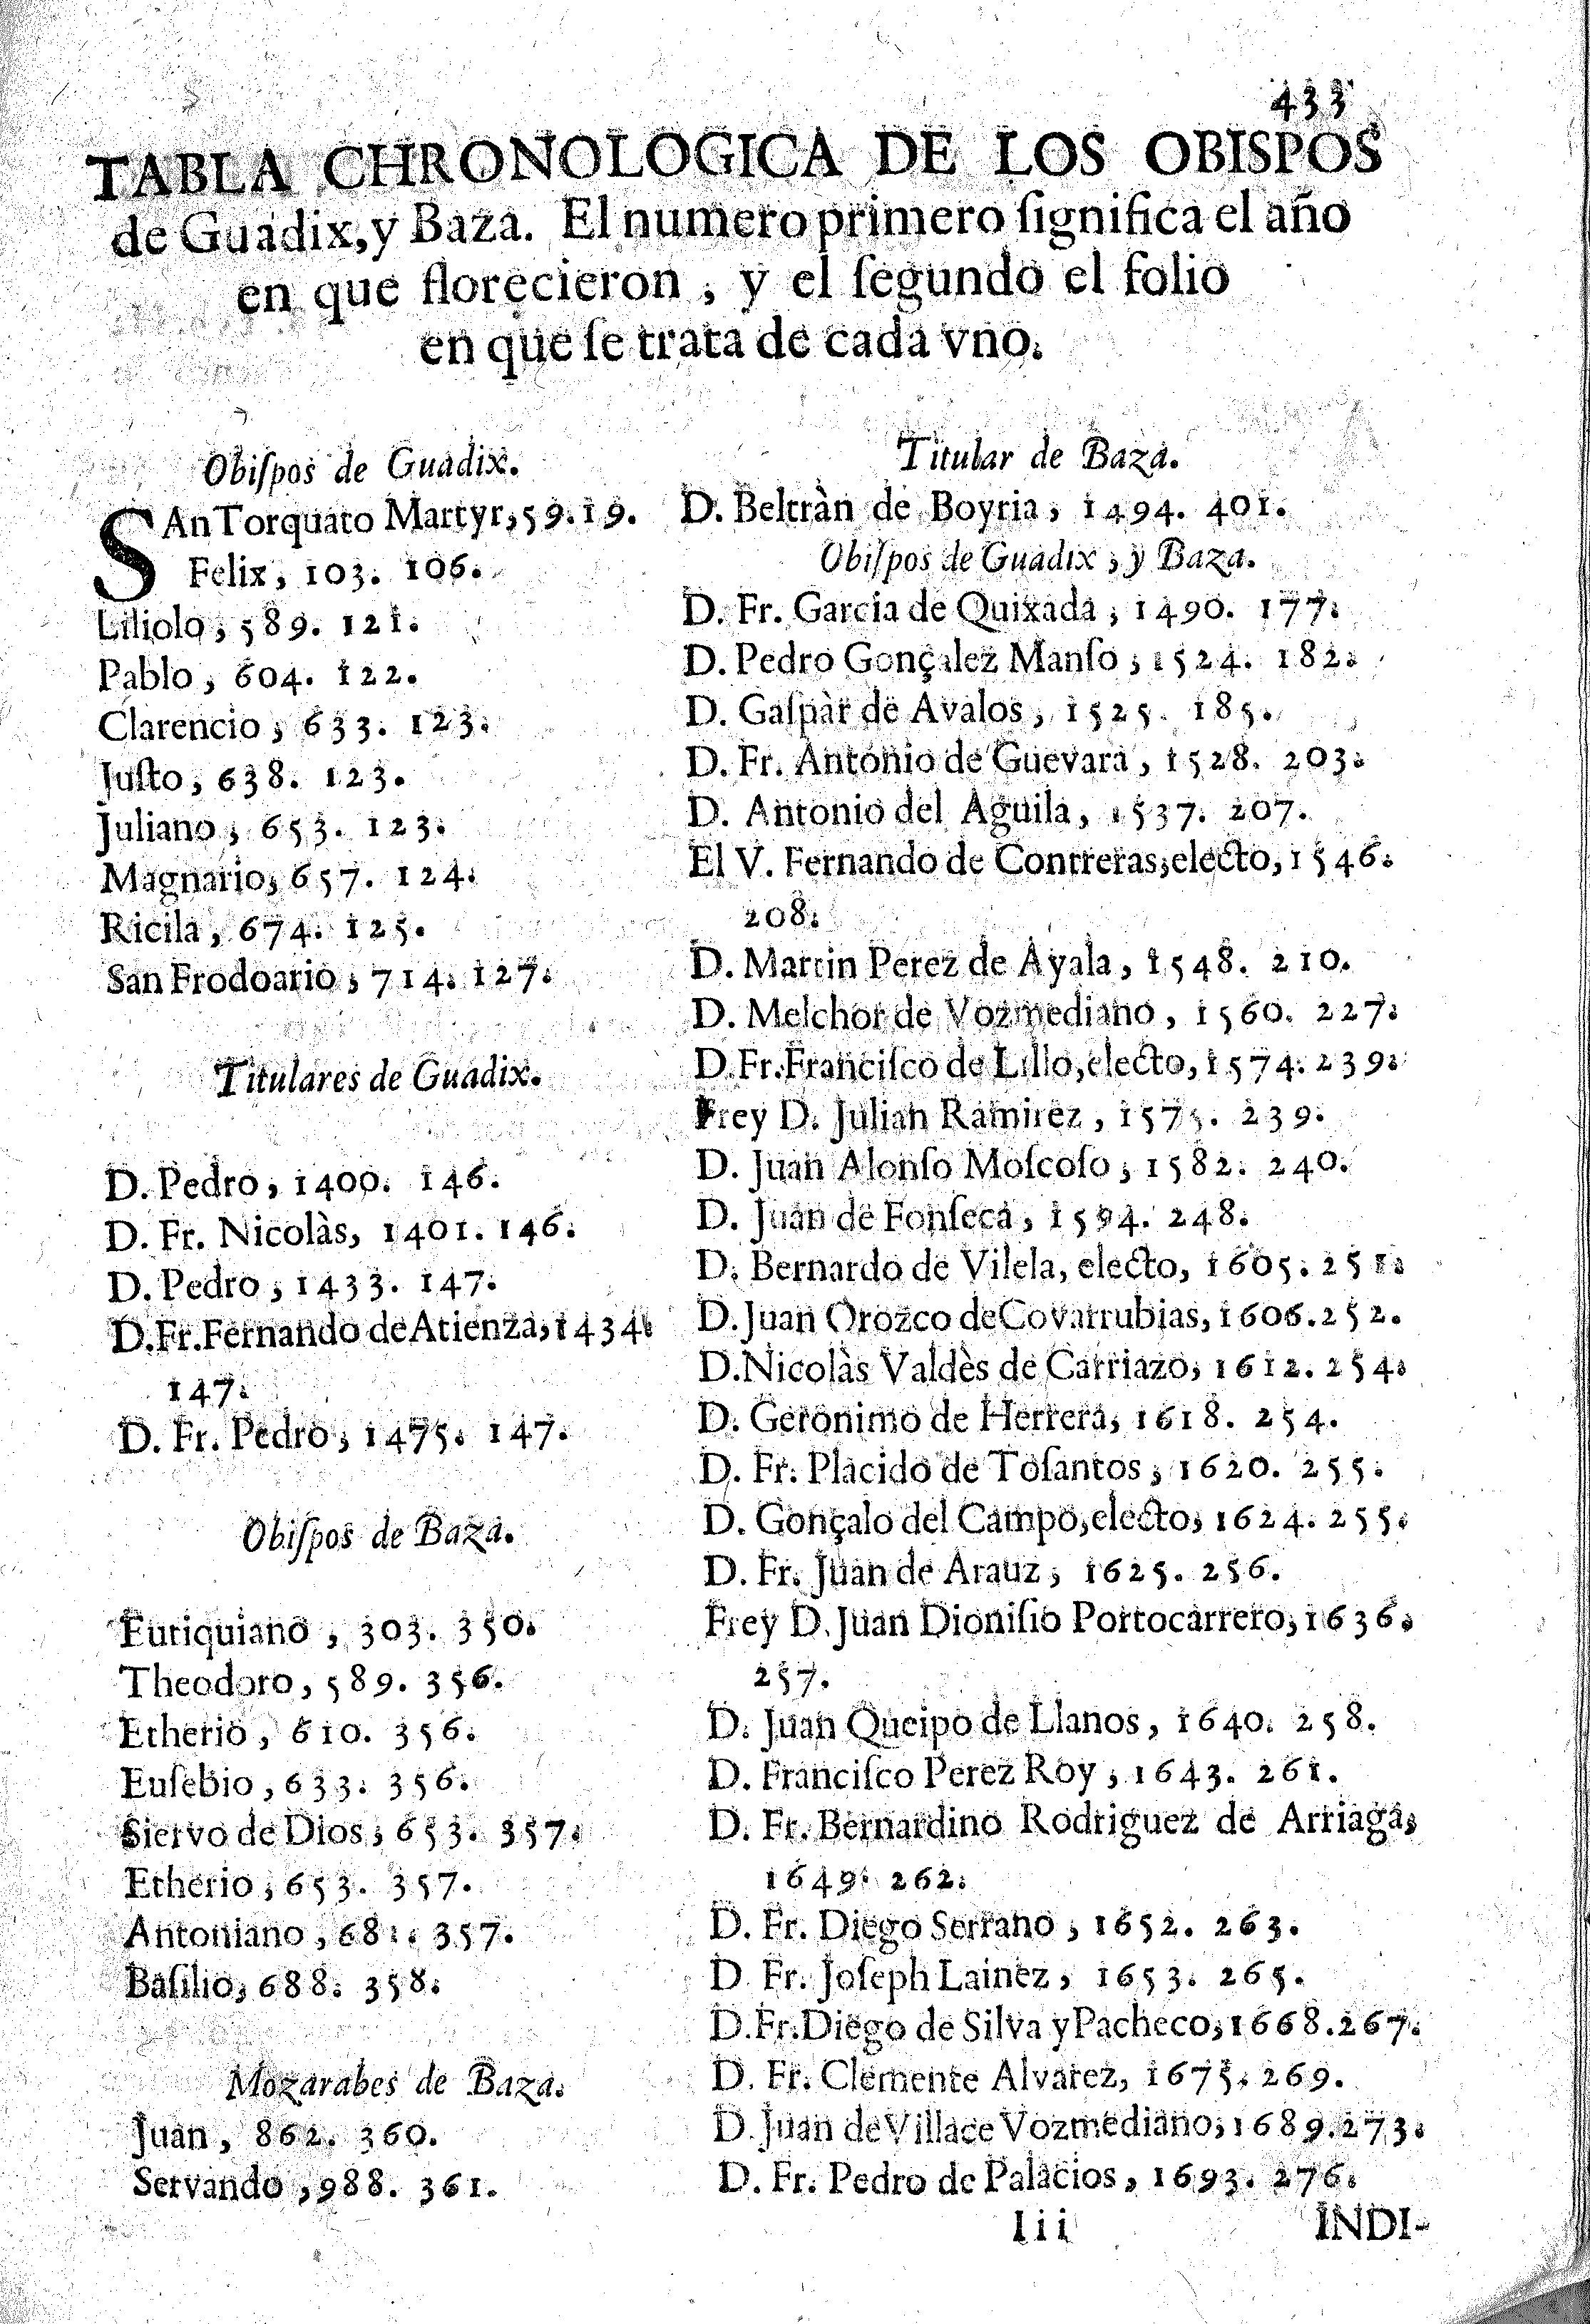 Tabla chronologica de los obispos de Guadix y Baza